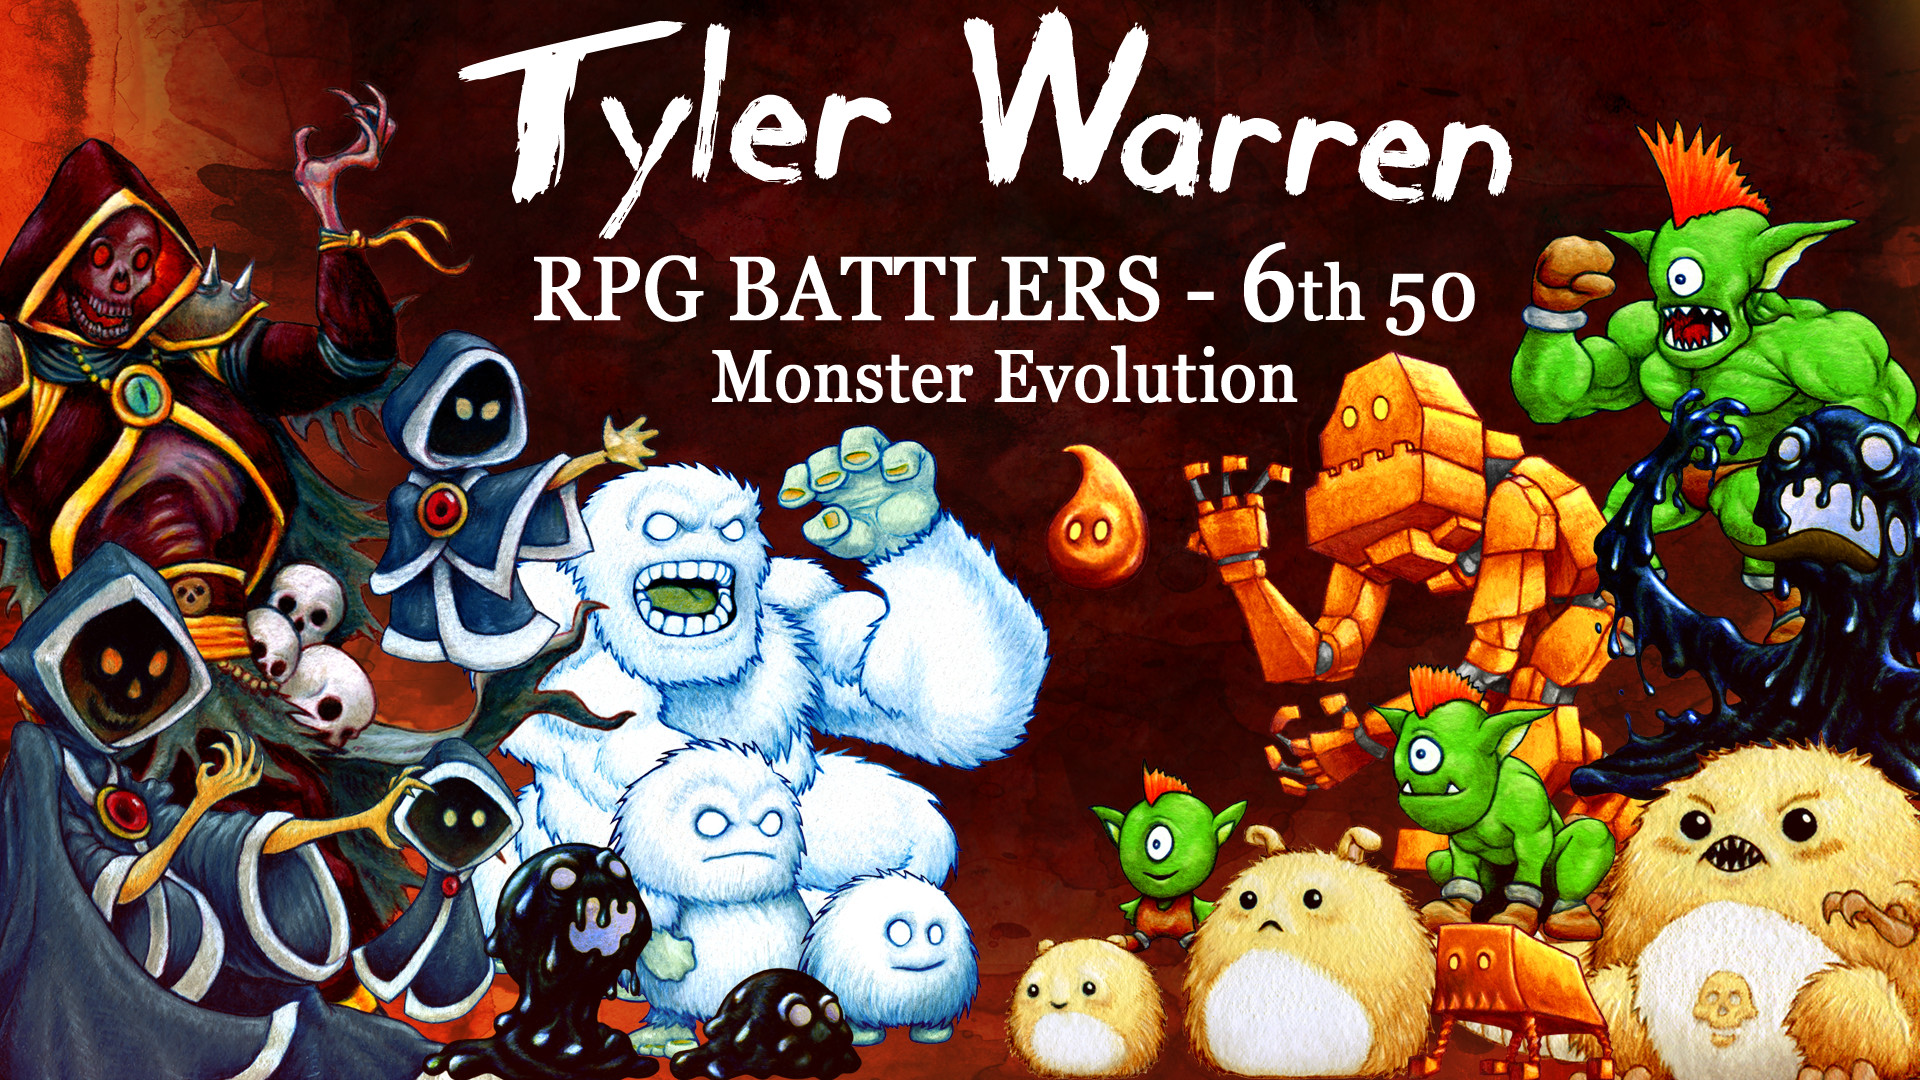 RPG Maker VX Ace - Tyler Warren RPG Battlers: Monster Evolution Featured Screenshot #1